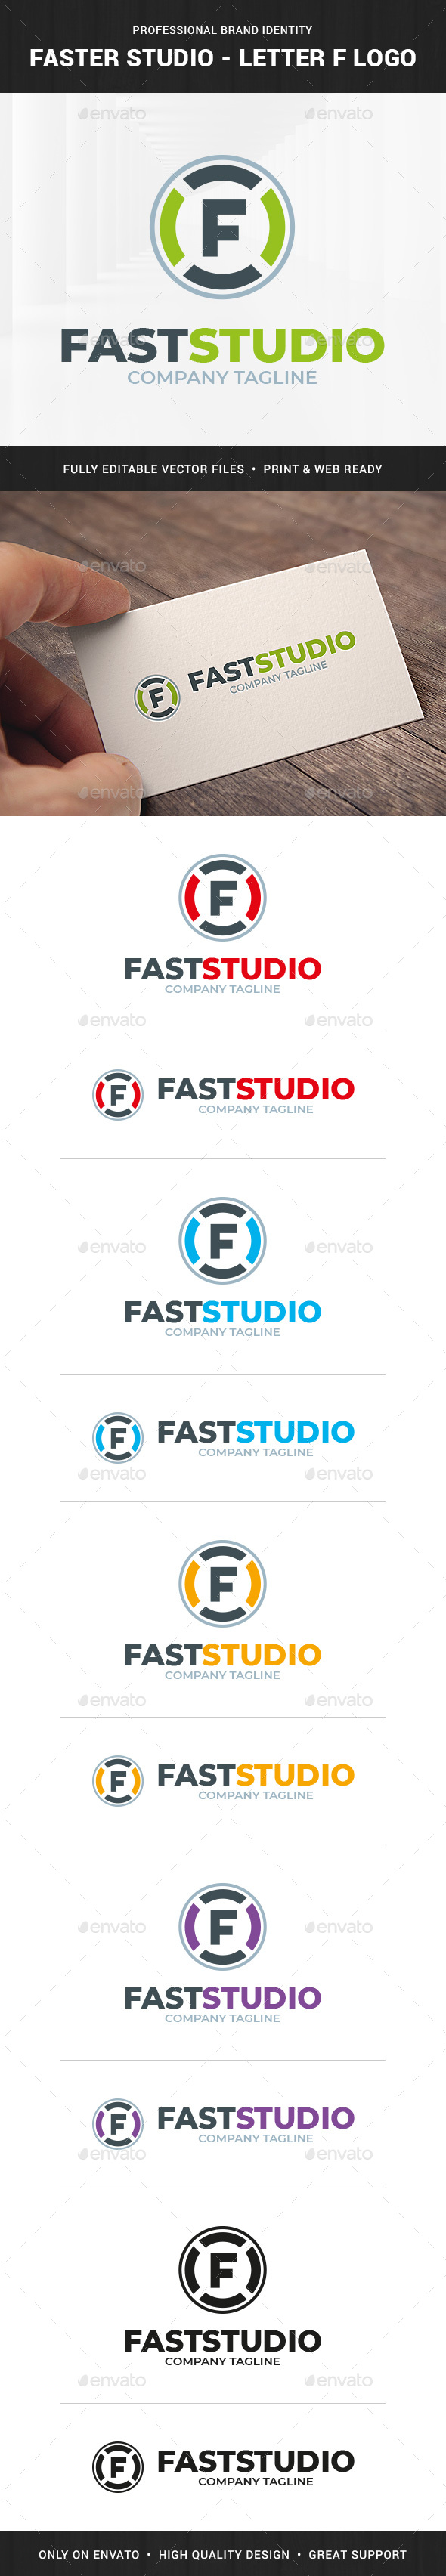 Faster Studio - Letter F Logo